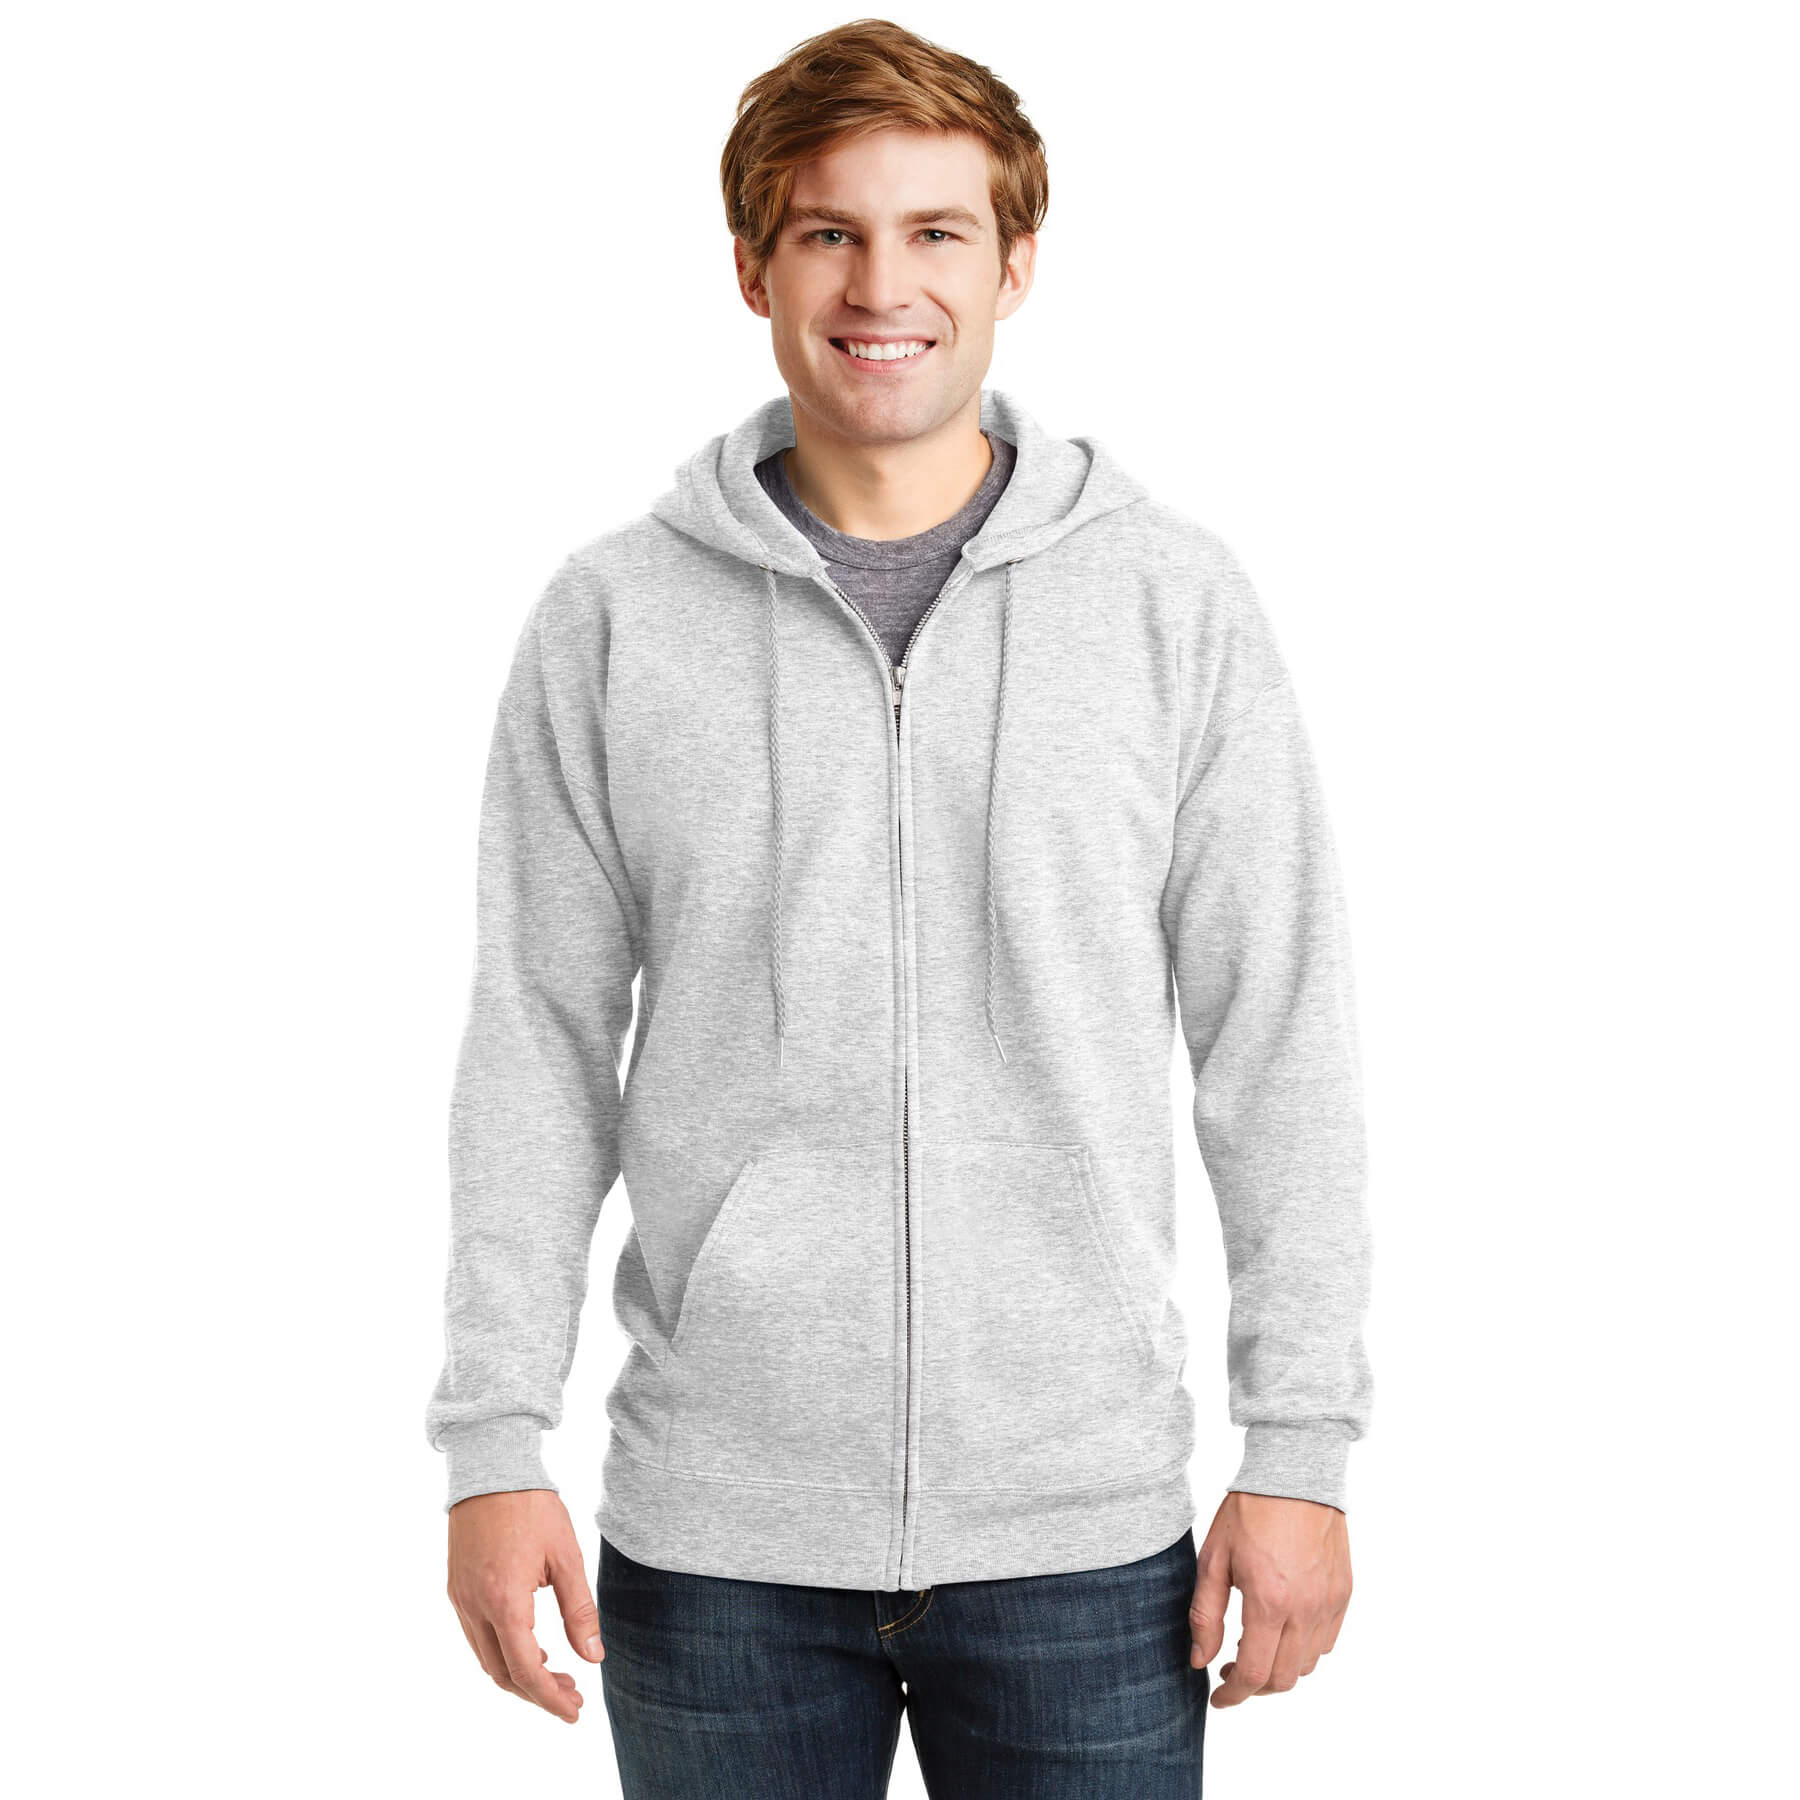 Hanes ® Ultimate Cotton ® - Full-Zip Hooded Sweatshirt - Phelps USA